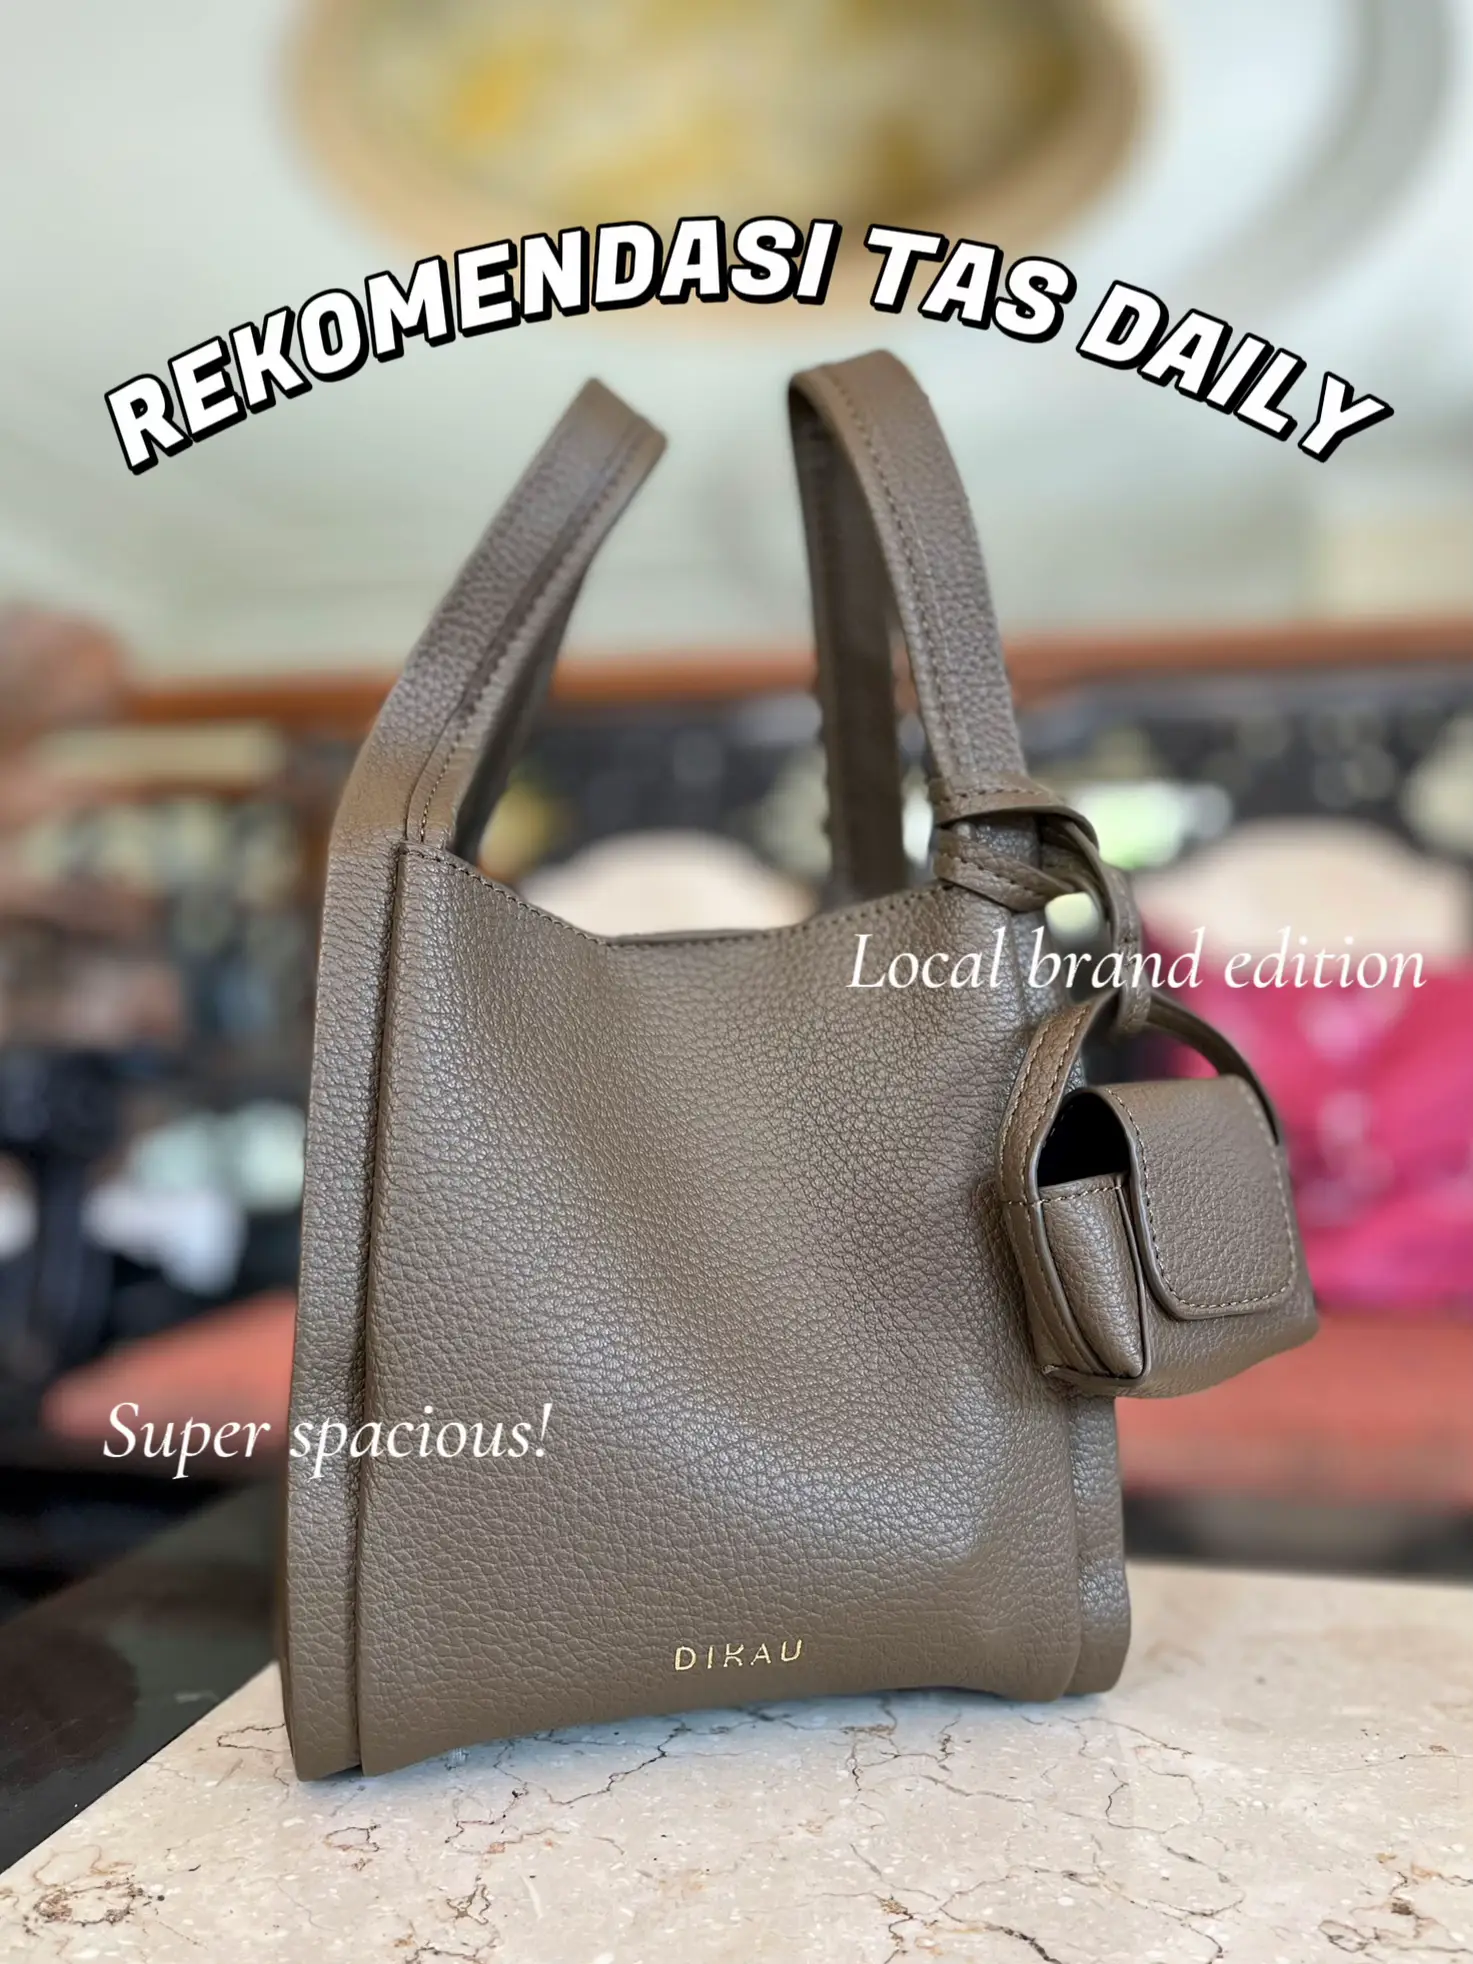 DIY Personalized Tote Bags - Jenny Komenda